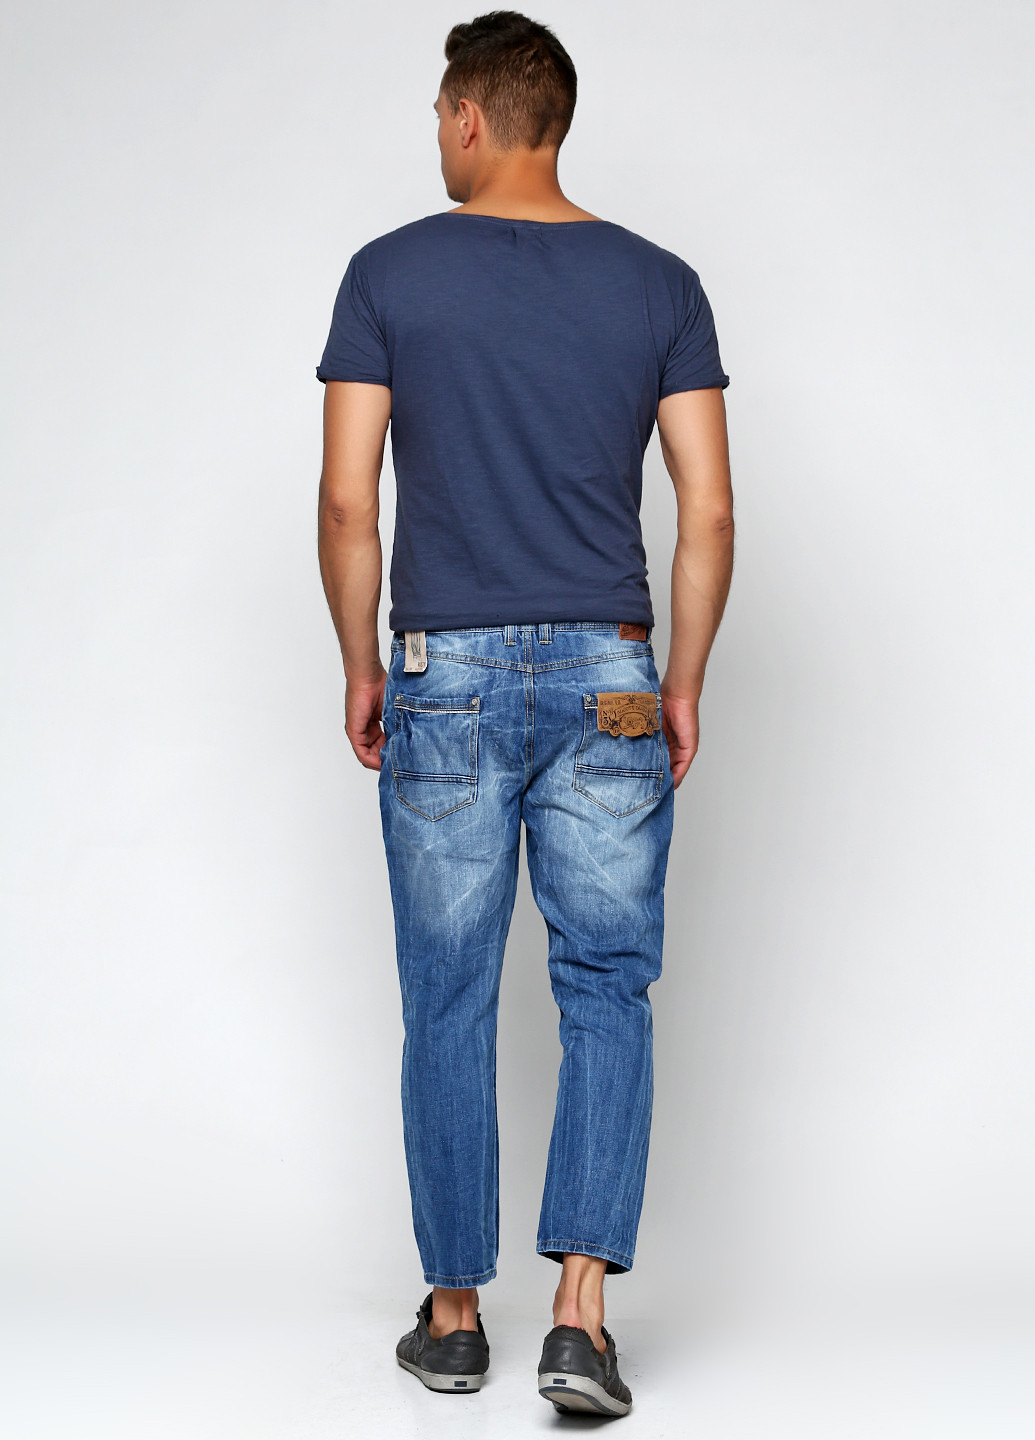 Синие демисезонные джинсы Alcott